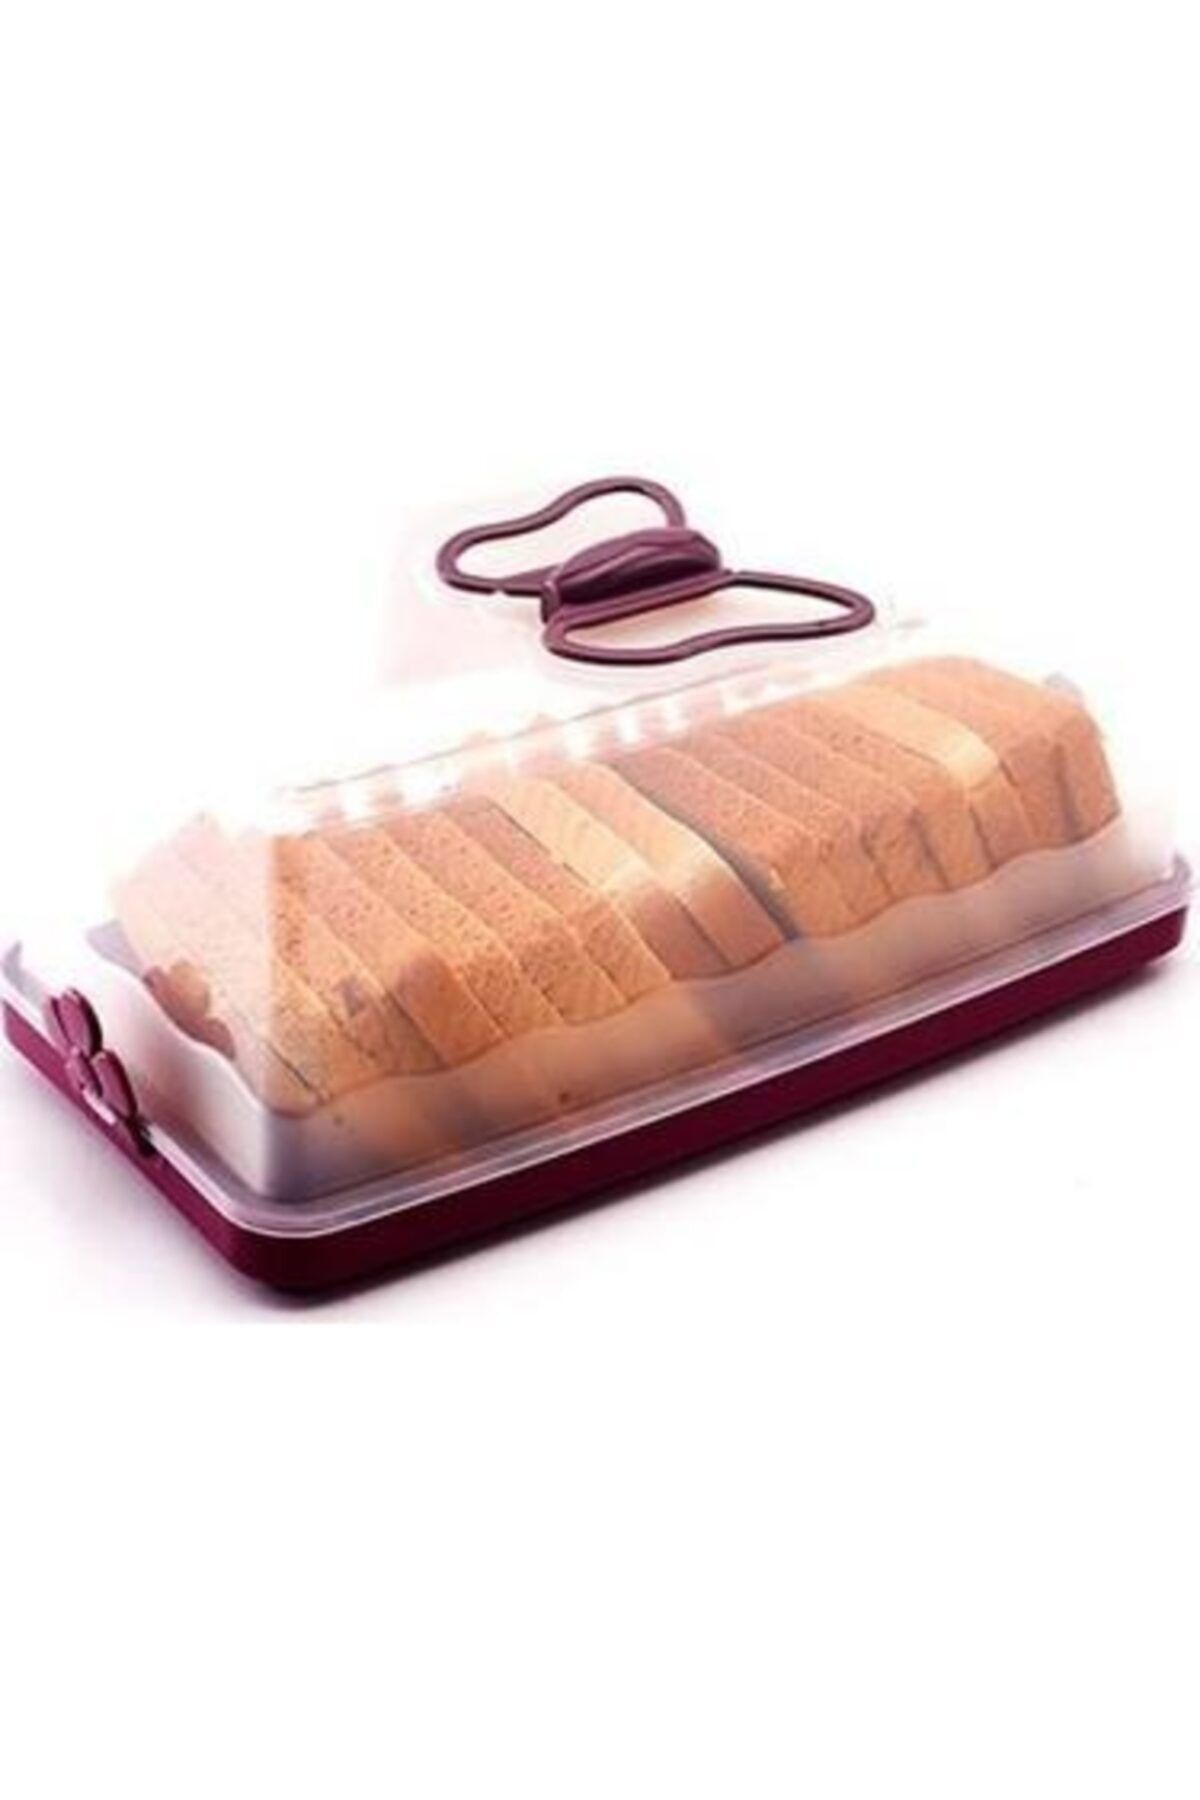 Çokuygunuz Plastik Pasta Kurabiye Kek Fanusu Saklama Kabı Ekmeklik Kutu